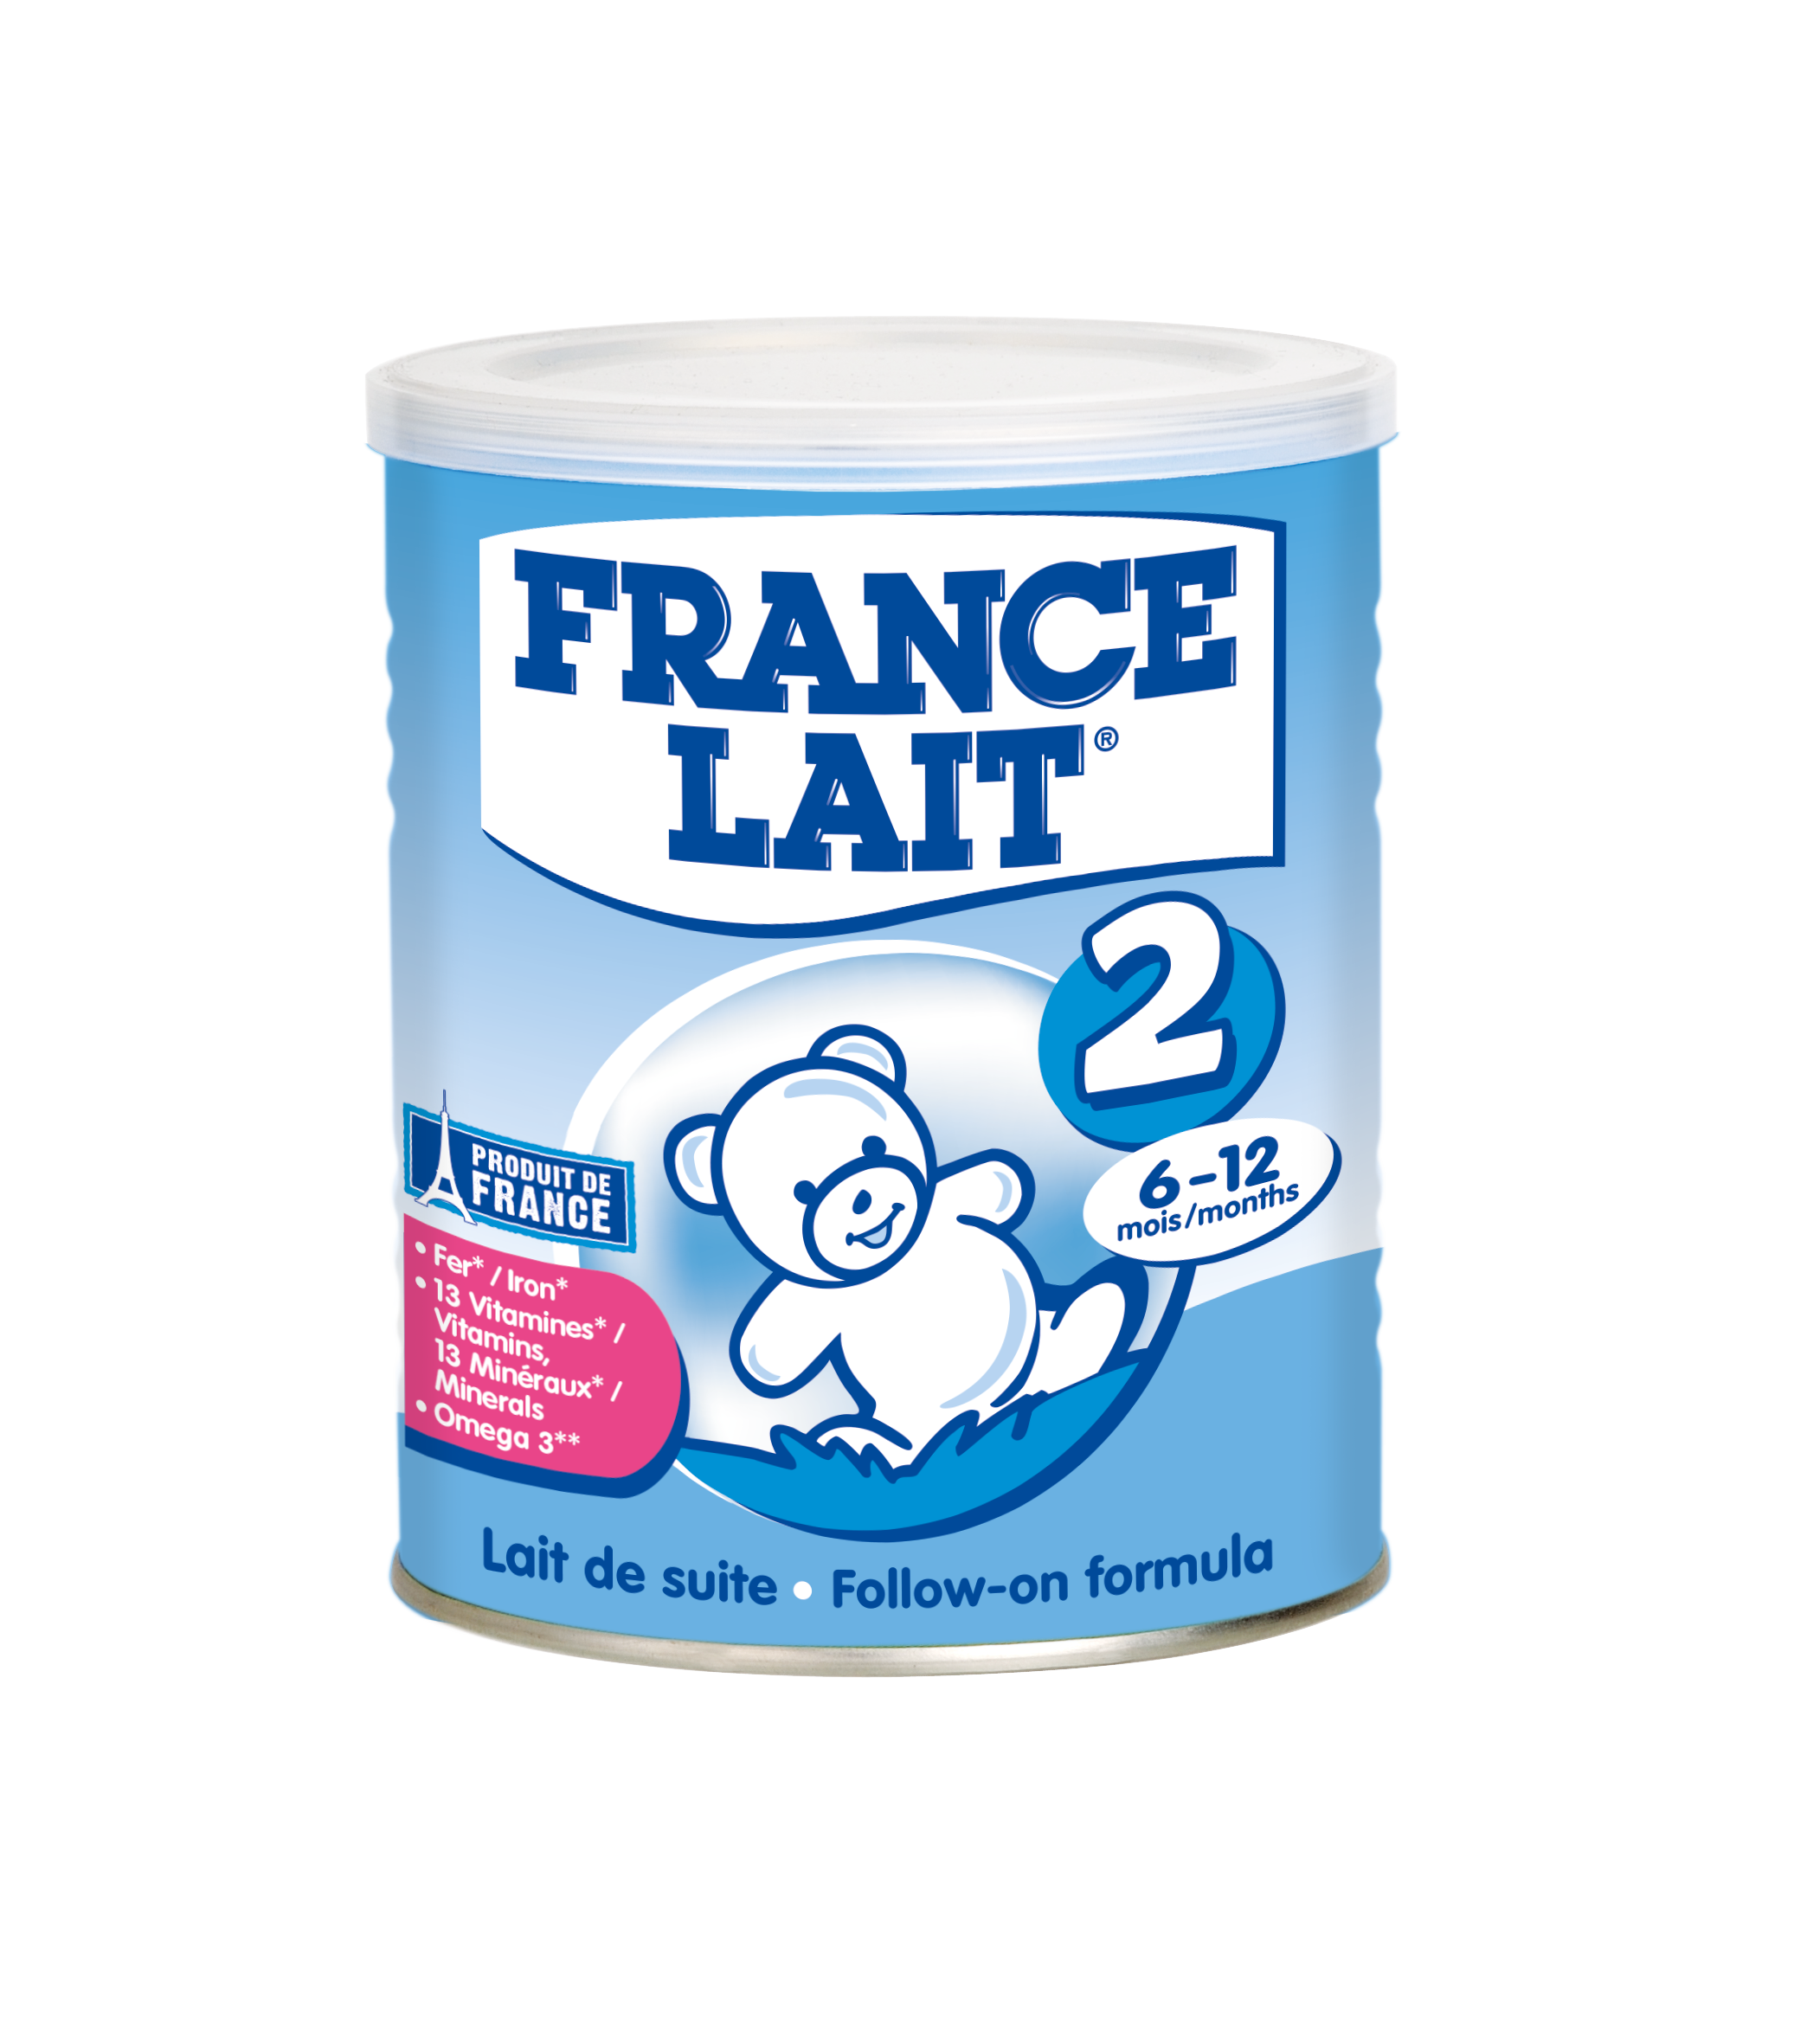 cho con dùng Sữa France Lait mỗi ngày